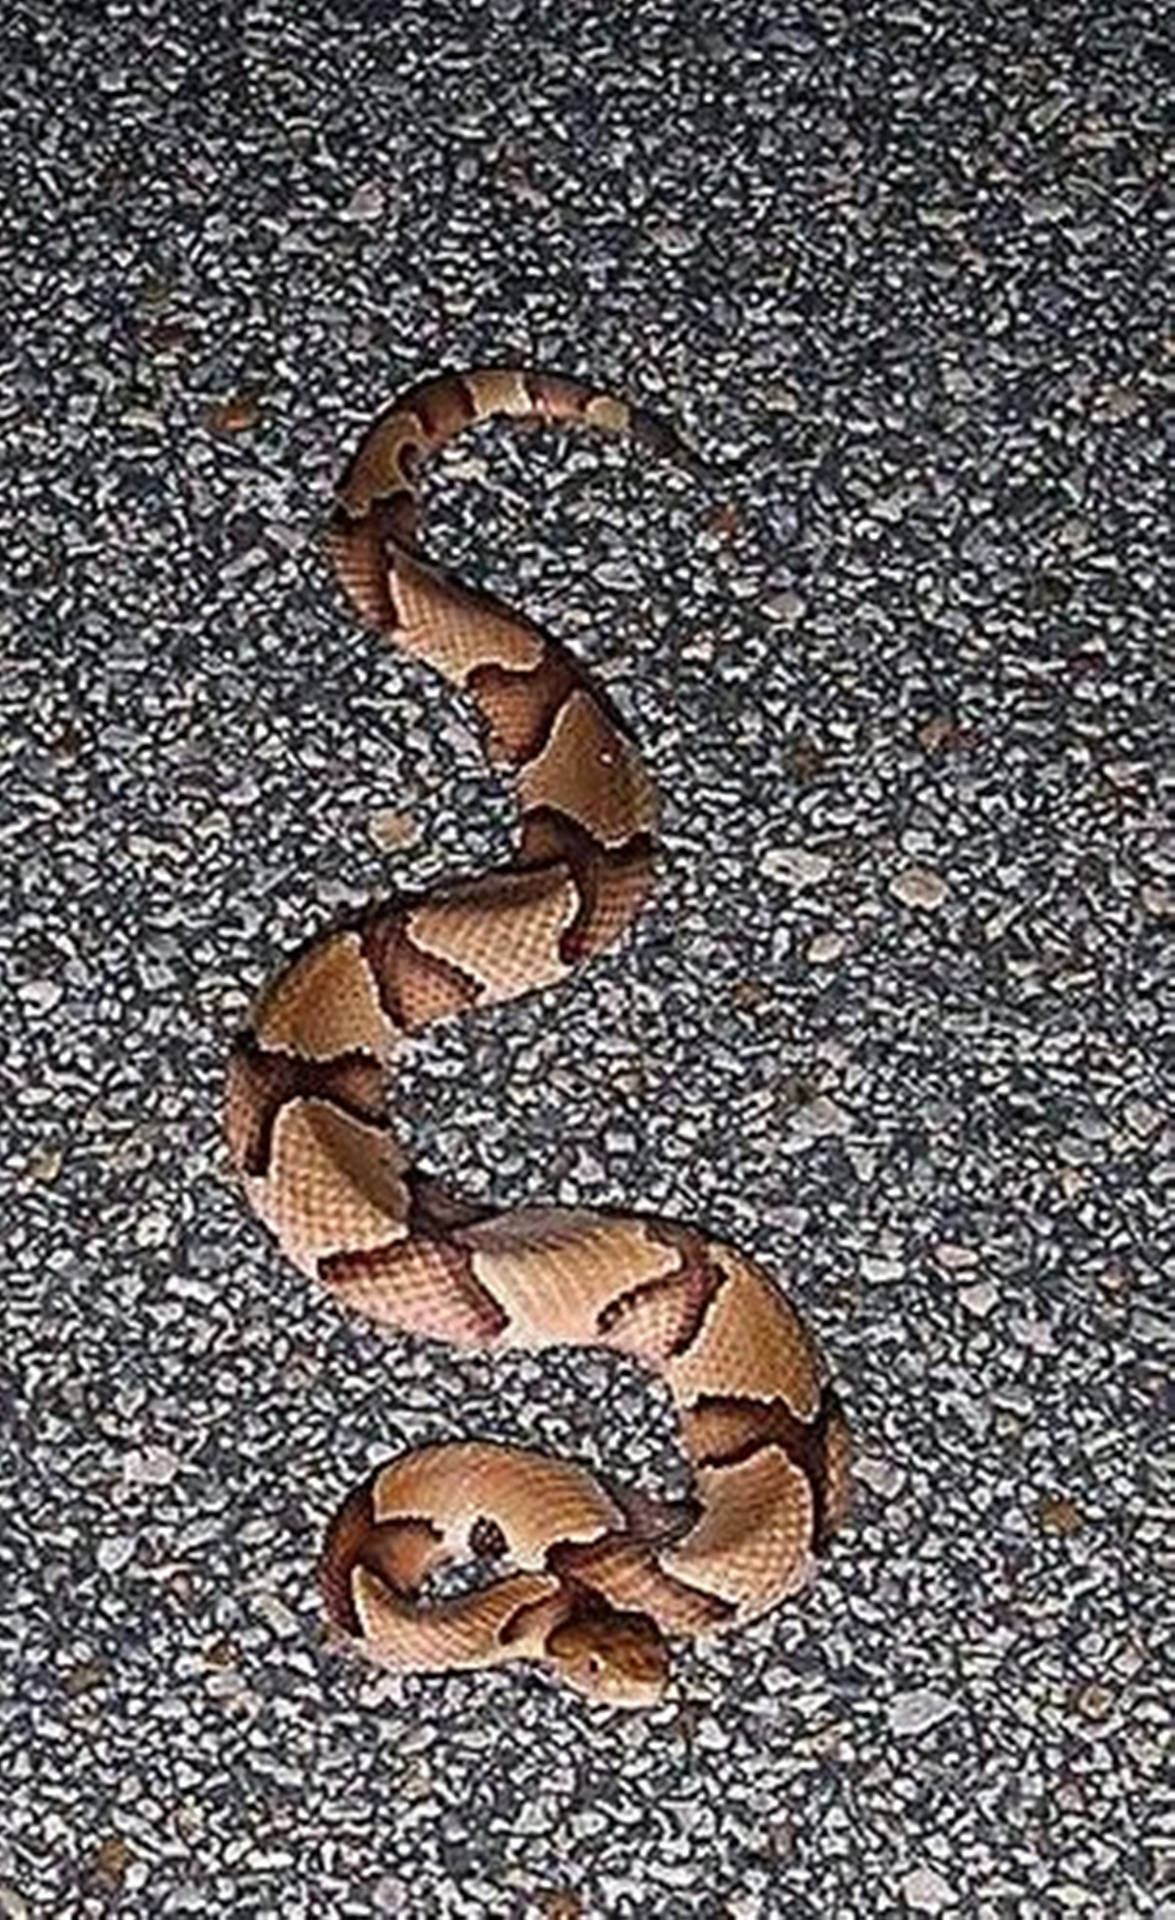 Copperhead Snake Slithering On Gravel Wallpaper